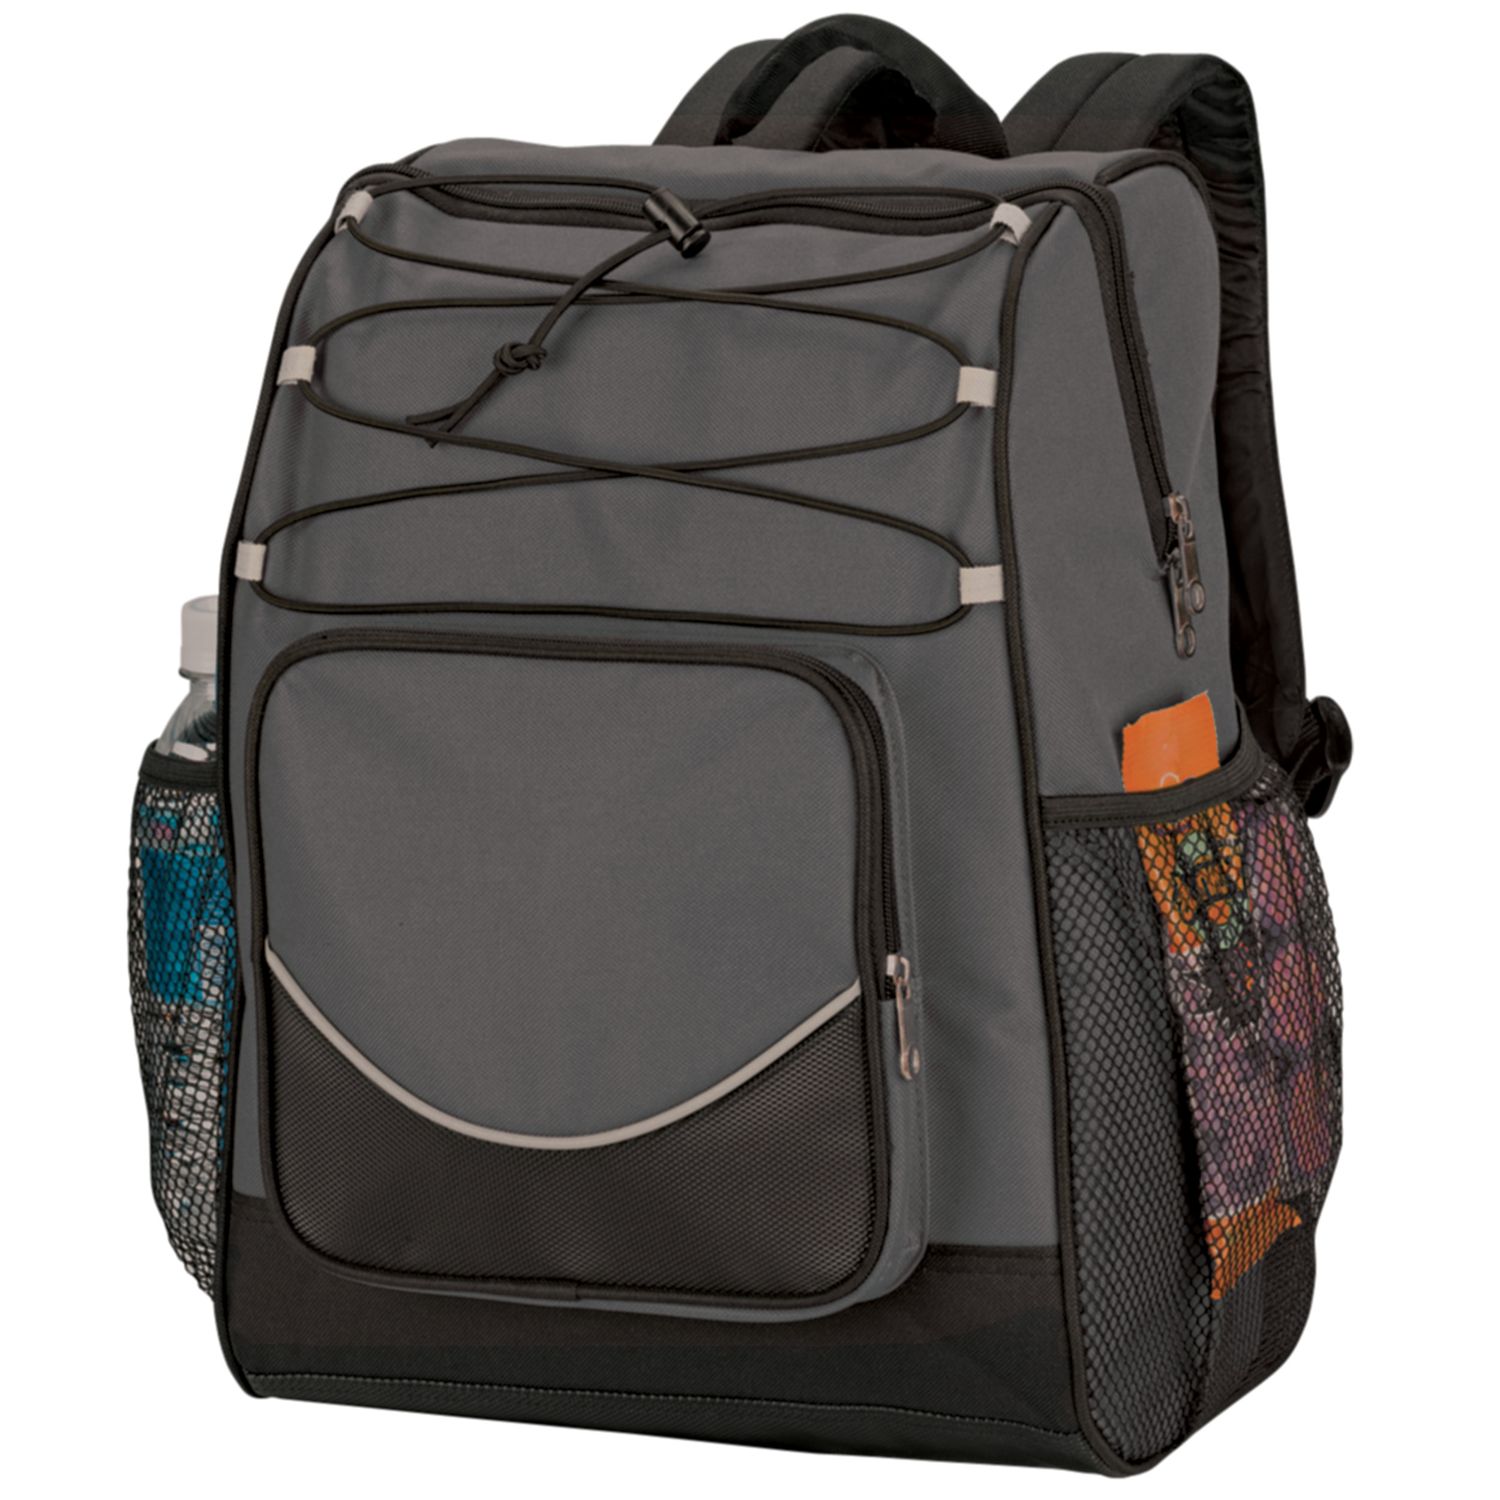 Backpack Cooler with Black Trim, Cooler Color: Grey